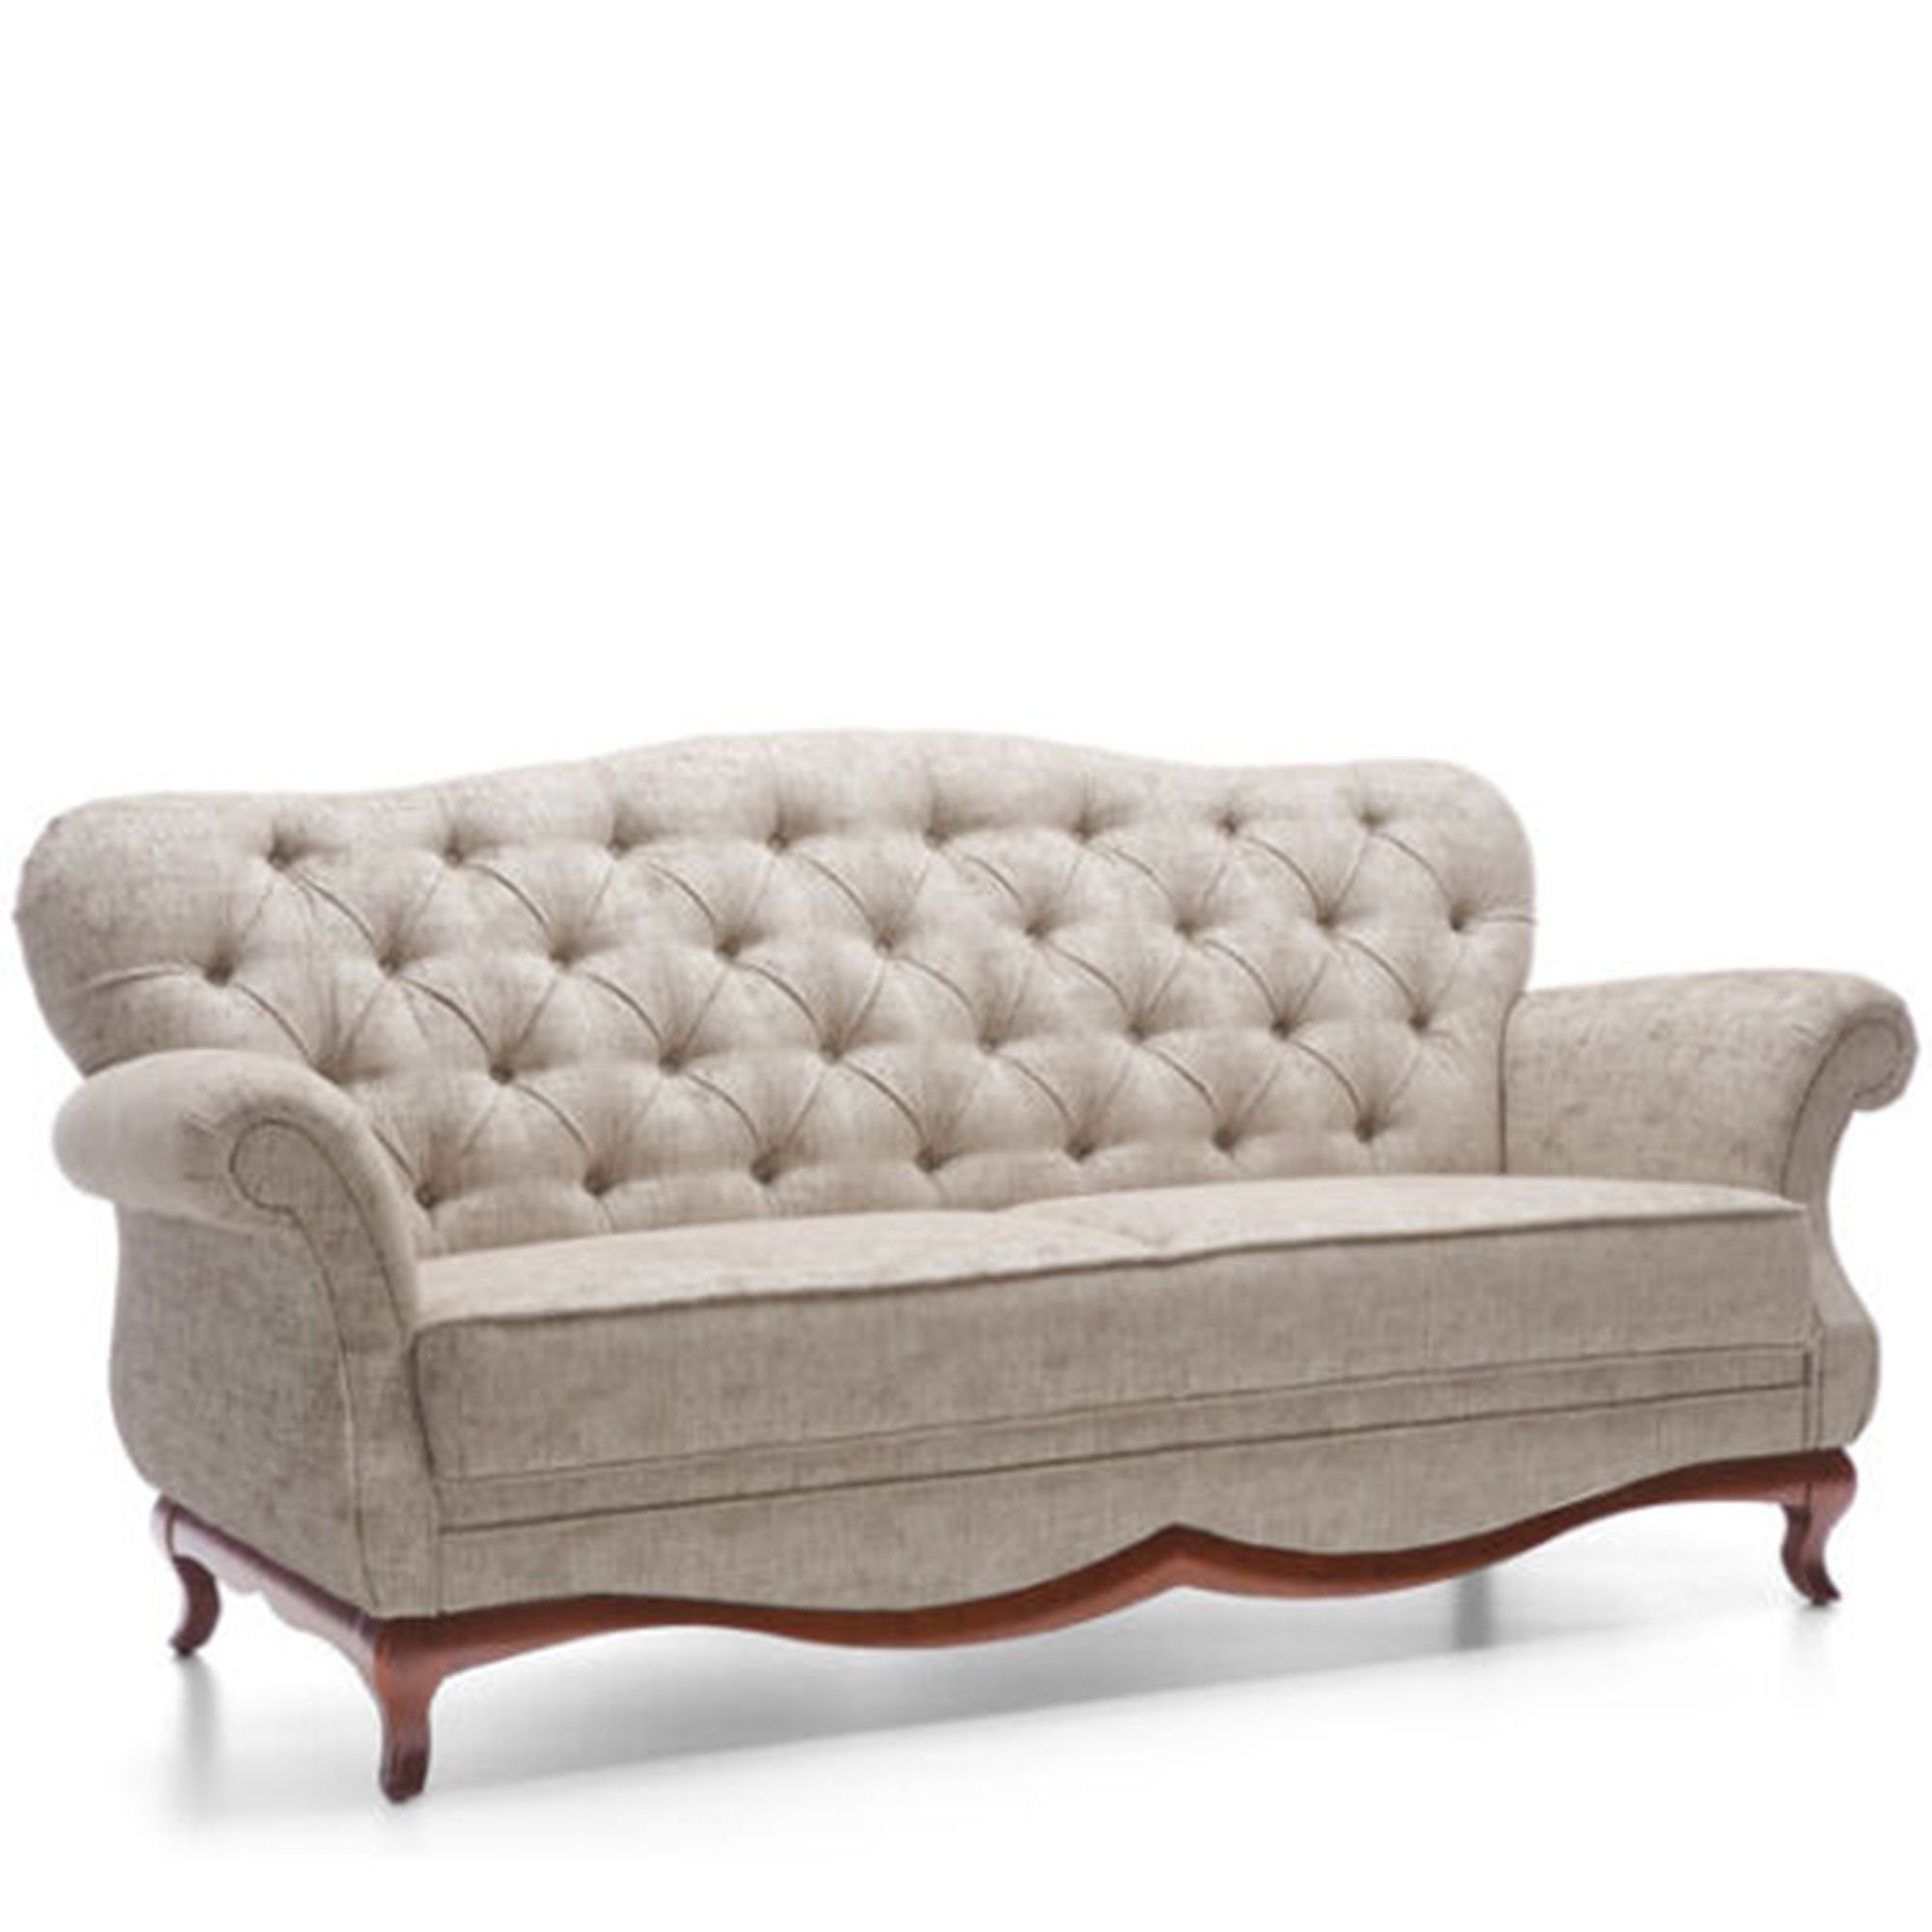 JVmoebel Sofa Weißer Chesterfield Dreisitzer Couch Polster Möbel Textil Stoff Neu, Made in Europe